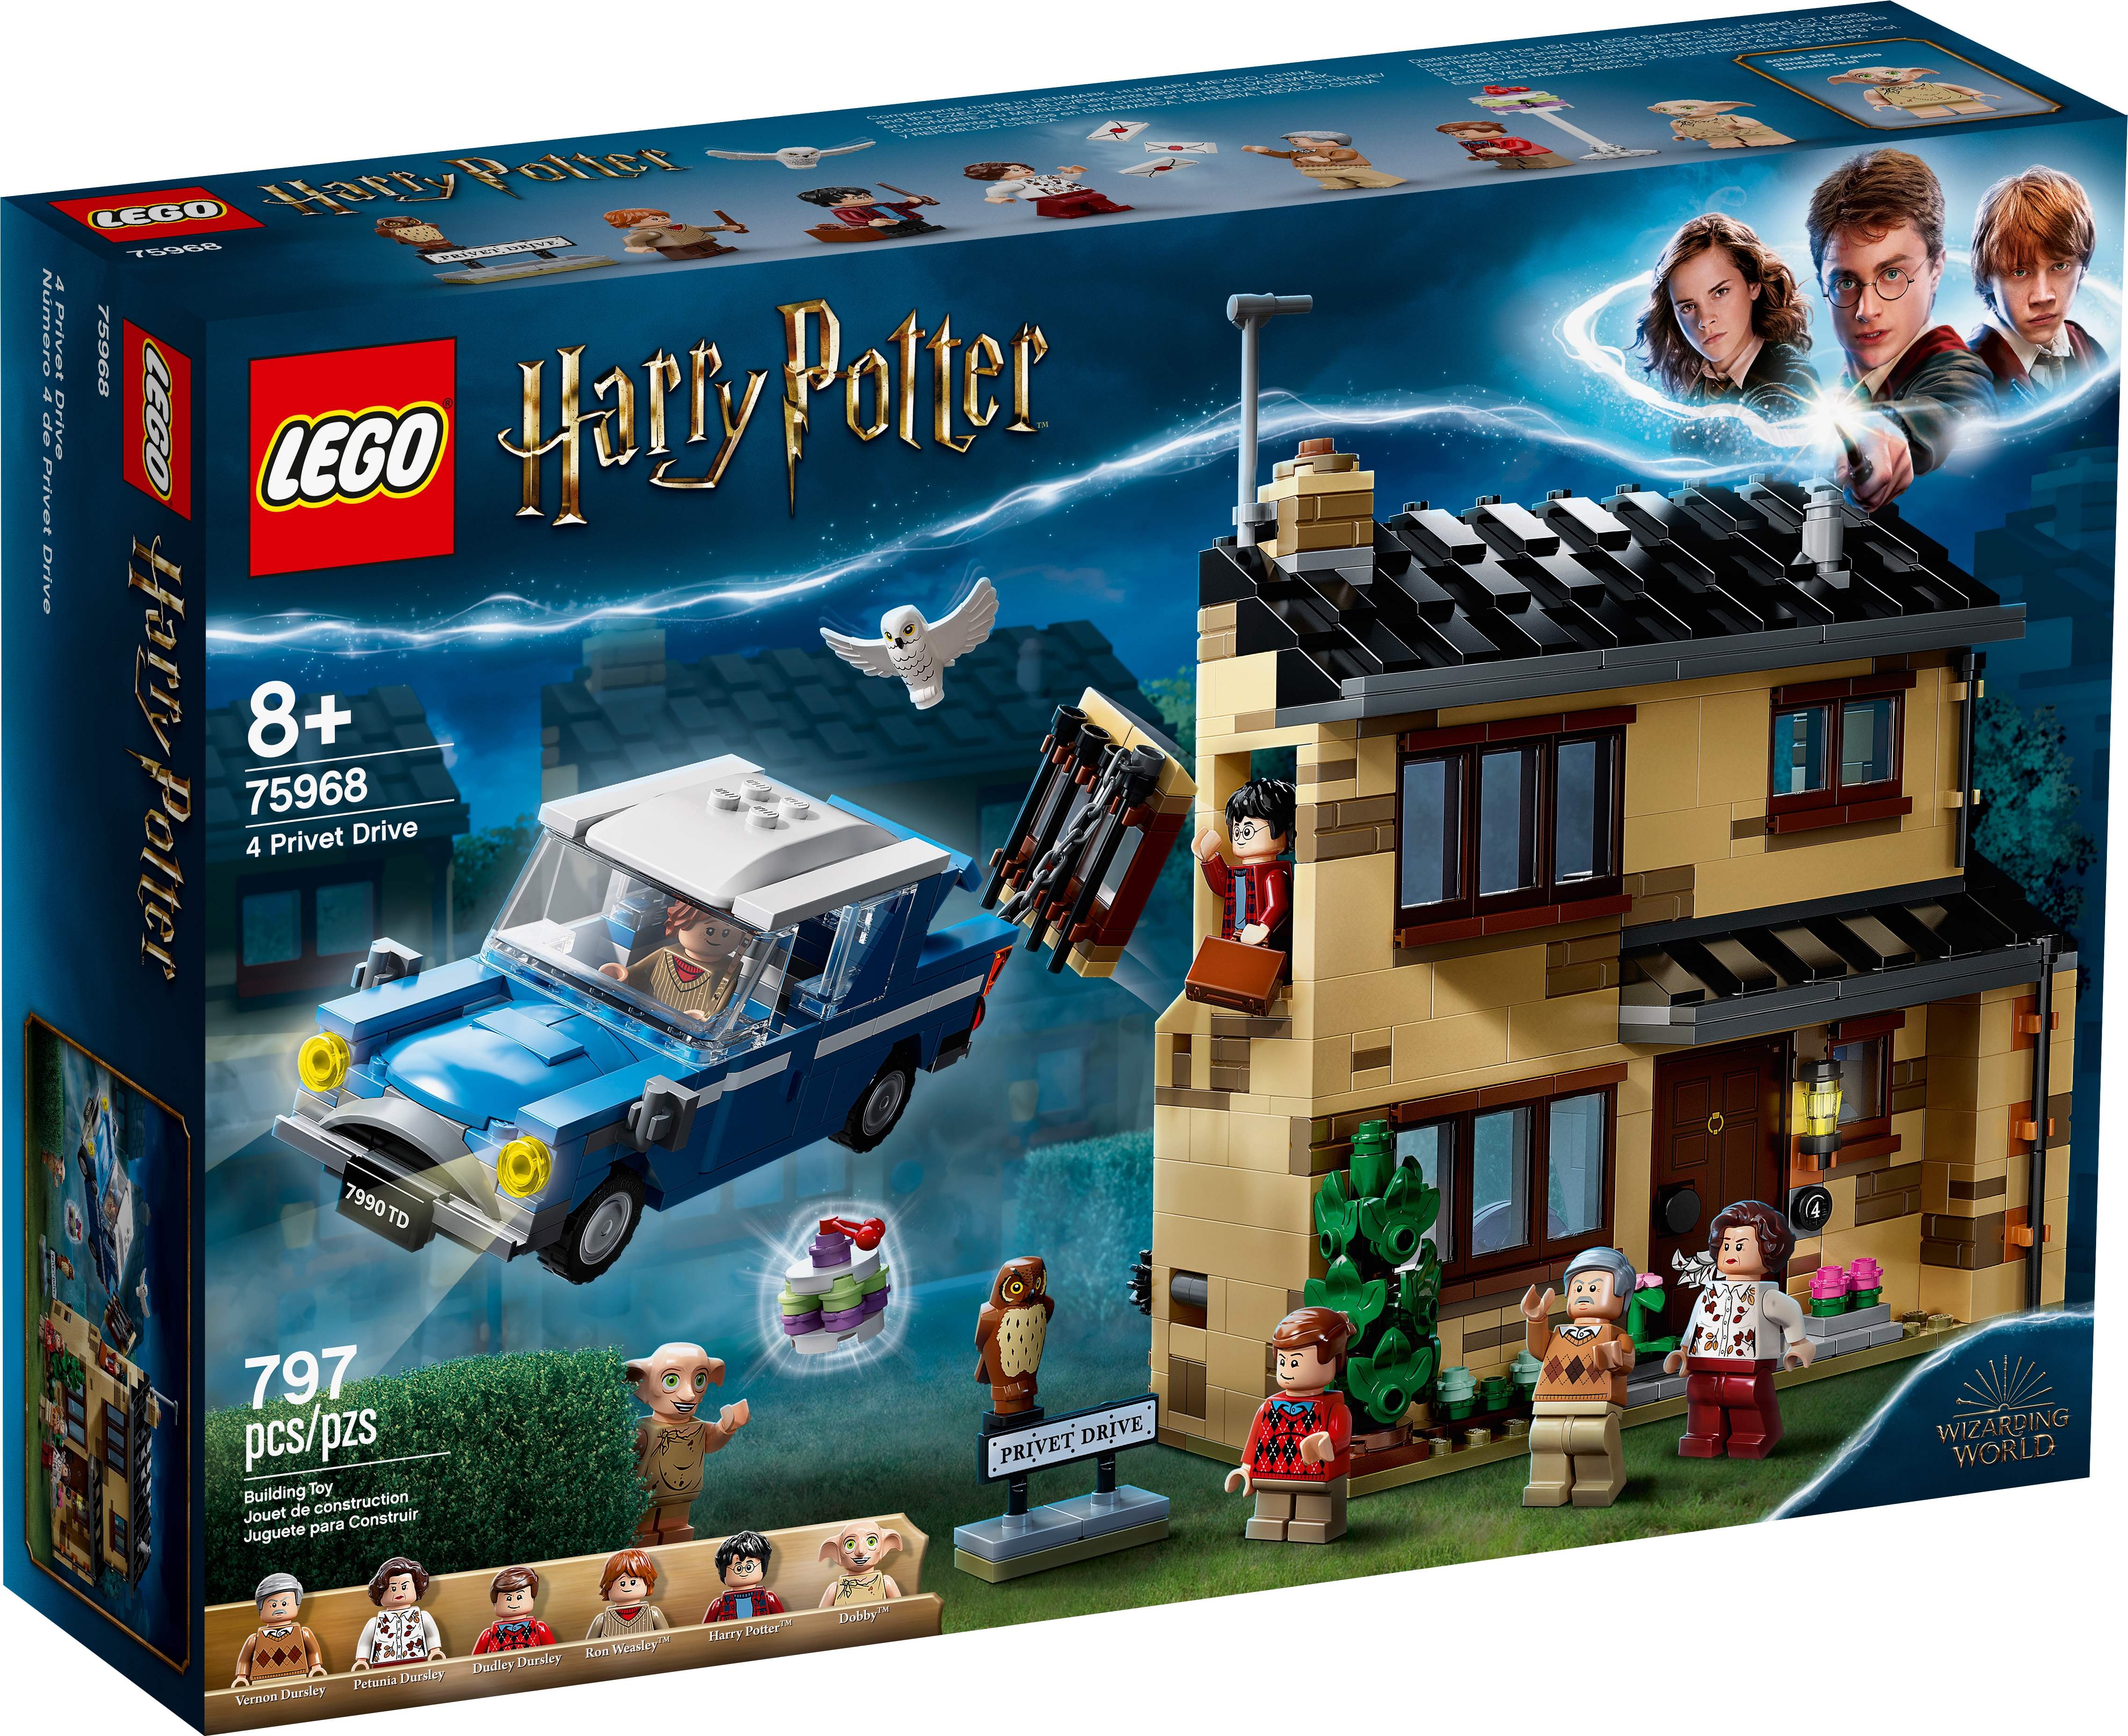 Ligusterweg 4 75968 Harry Potter Offiziellen Lego Shop De